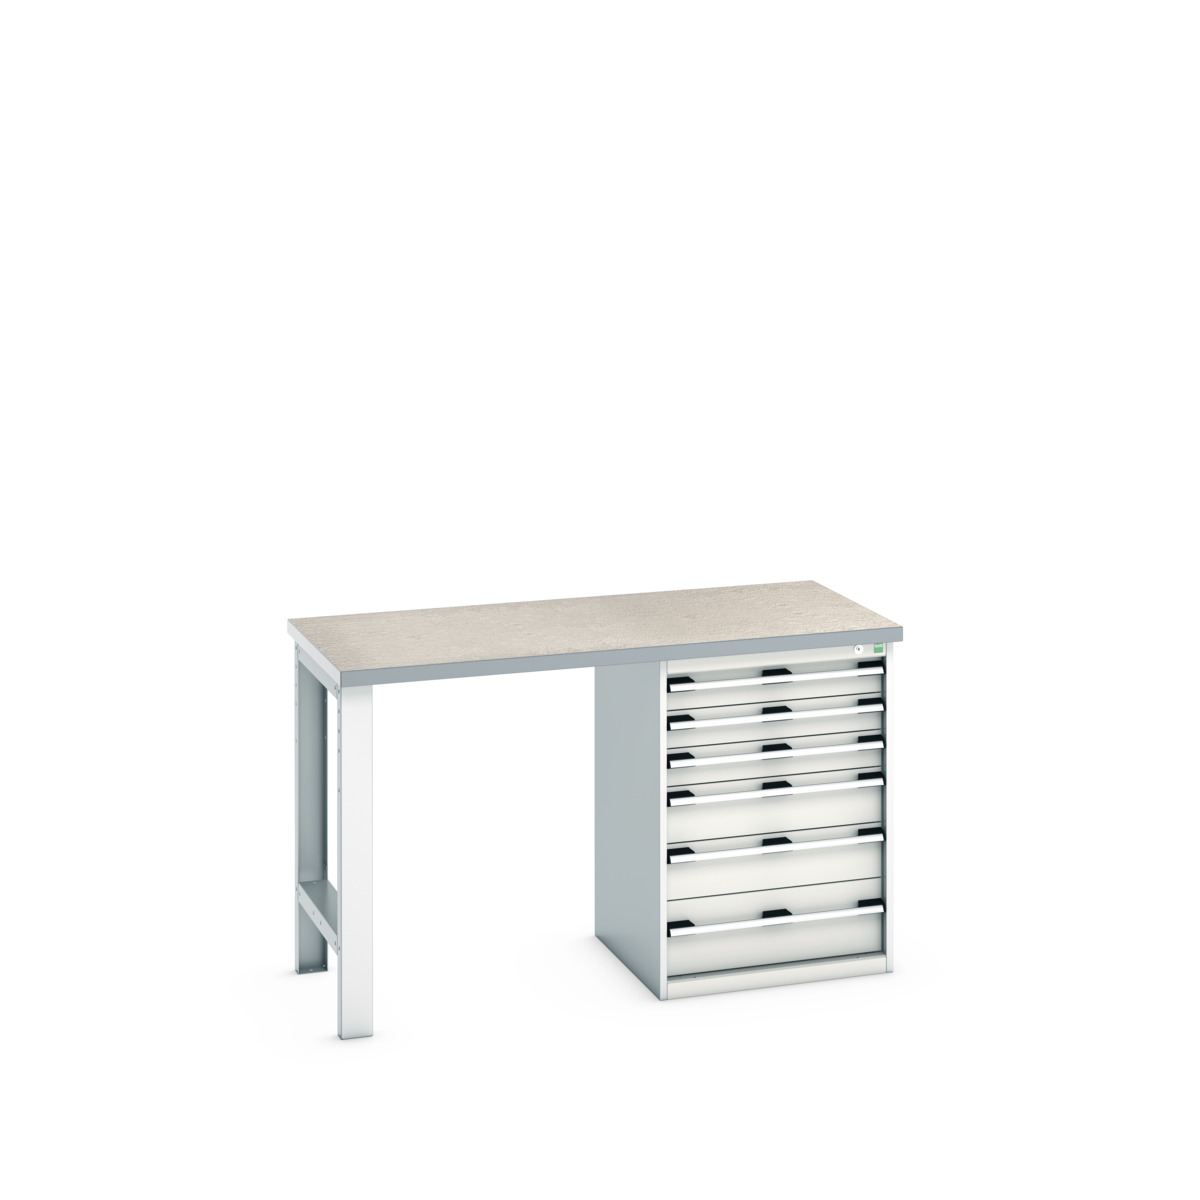 41003493.16V - cubio pedestal bench (lino)